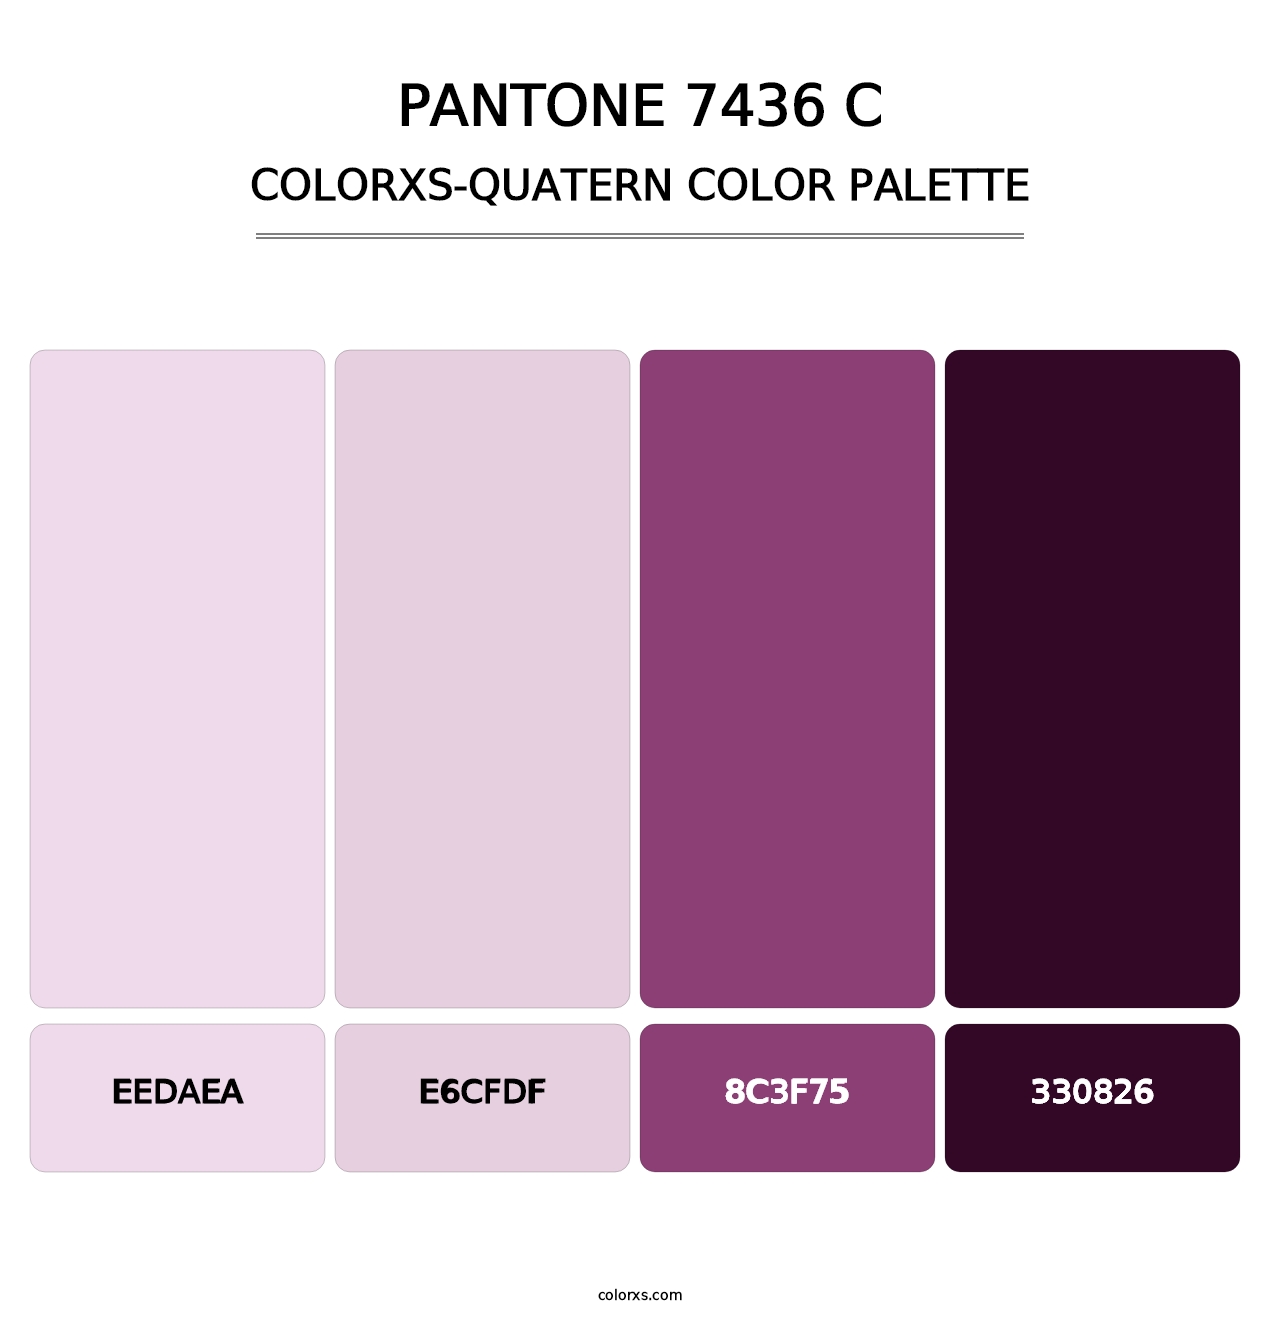 PANTONE 7436 C - Colorxs Quatern Palette